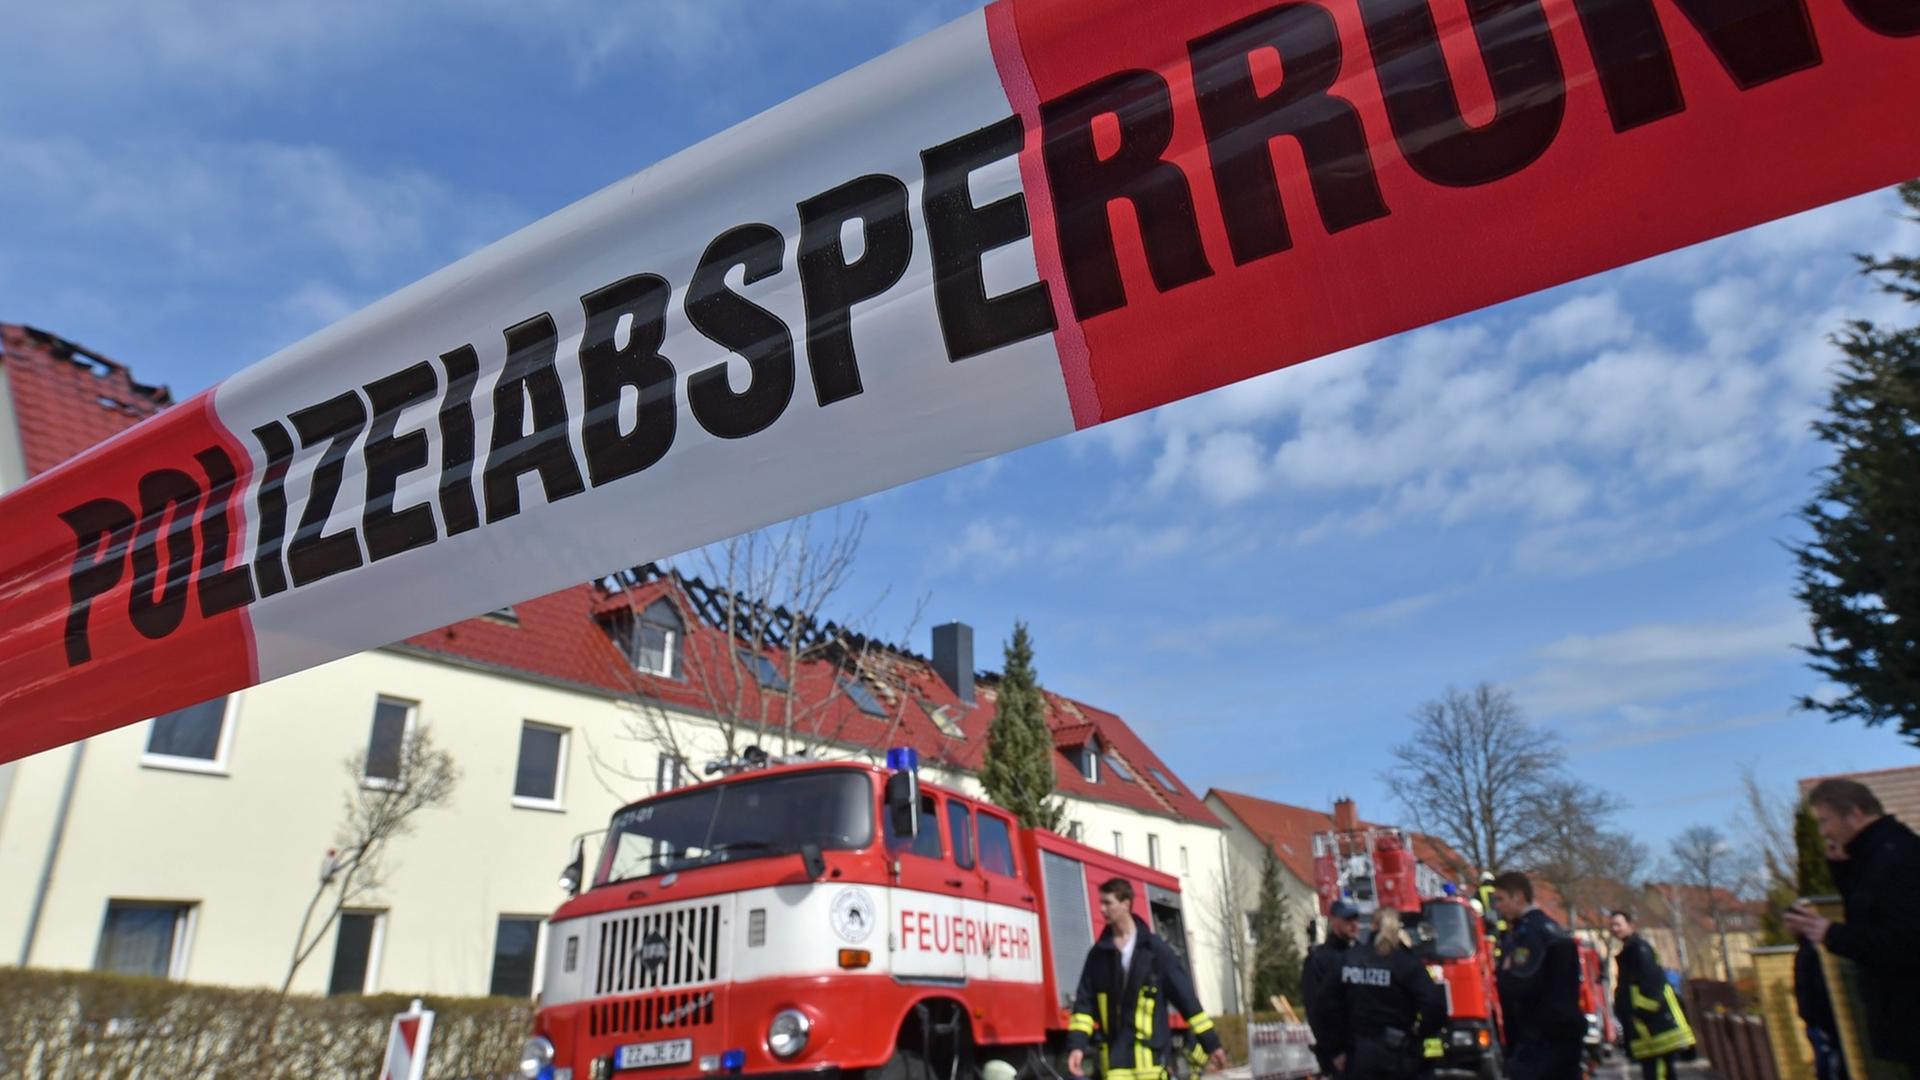 Einsatzkräfte von Feuerwehr und Polizei stehen am 04.04.2015 vor der zukünftigen Unterkunft für Asylbewerber in Tröglitz (Sachsen-Anhalt). In der Nacht hatte es in dem Gebäude gebrannt. Die Polizei ermittelt wegen Verdacht auf Brandstiftung.